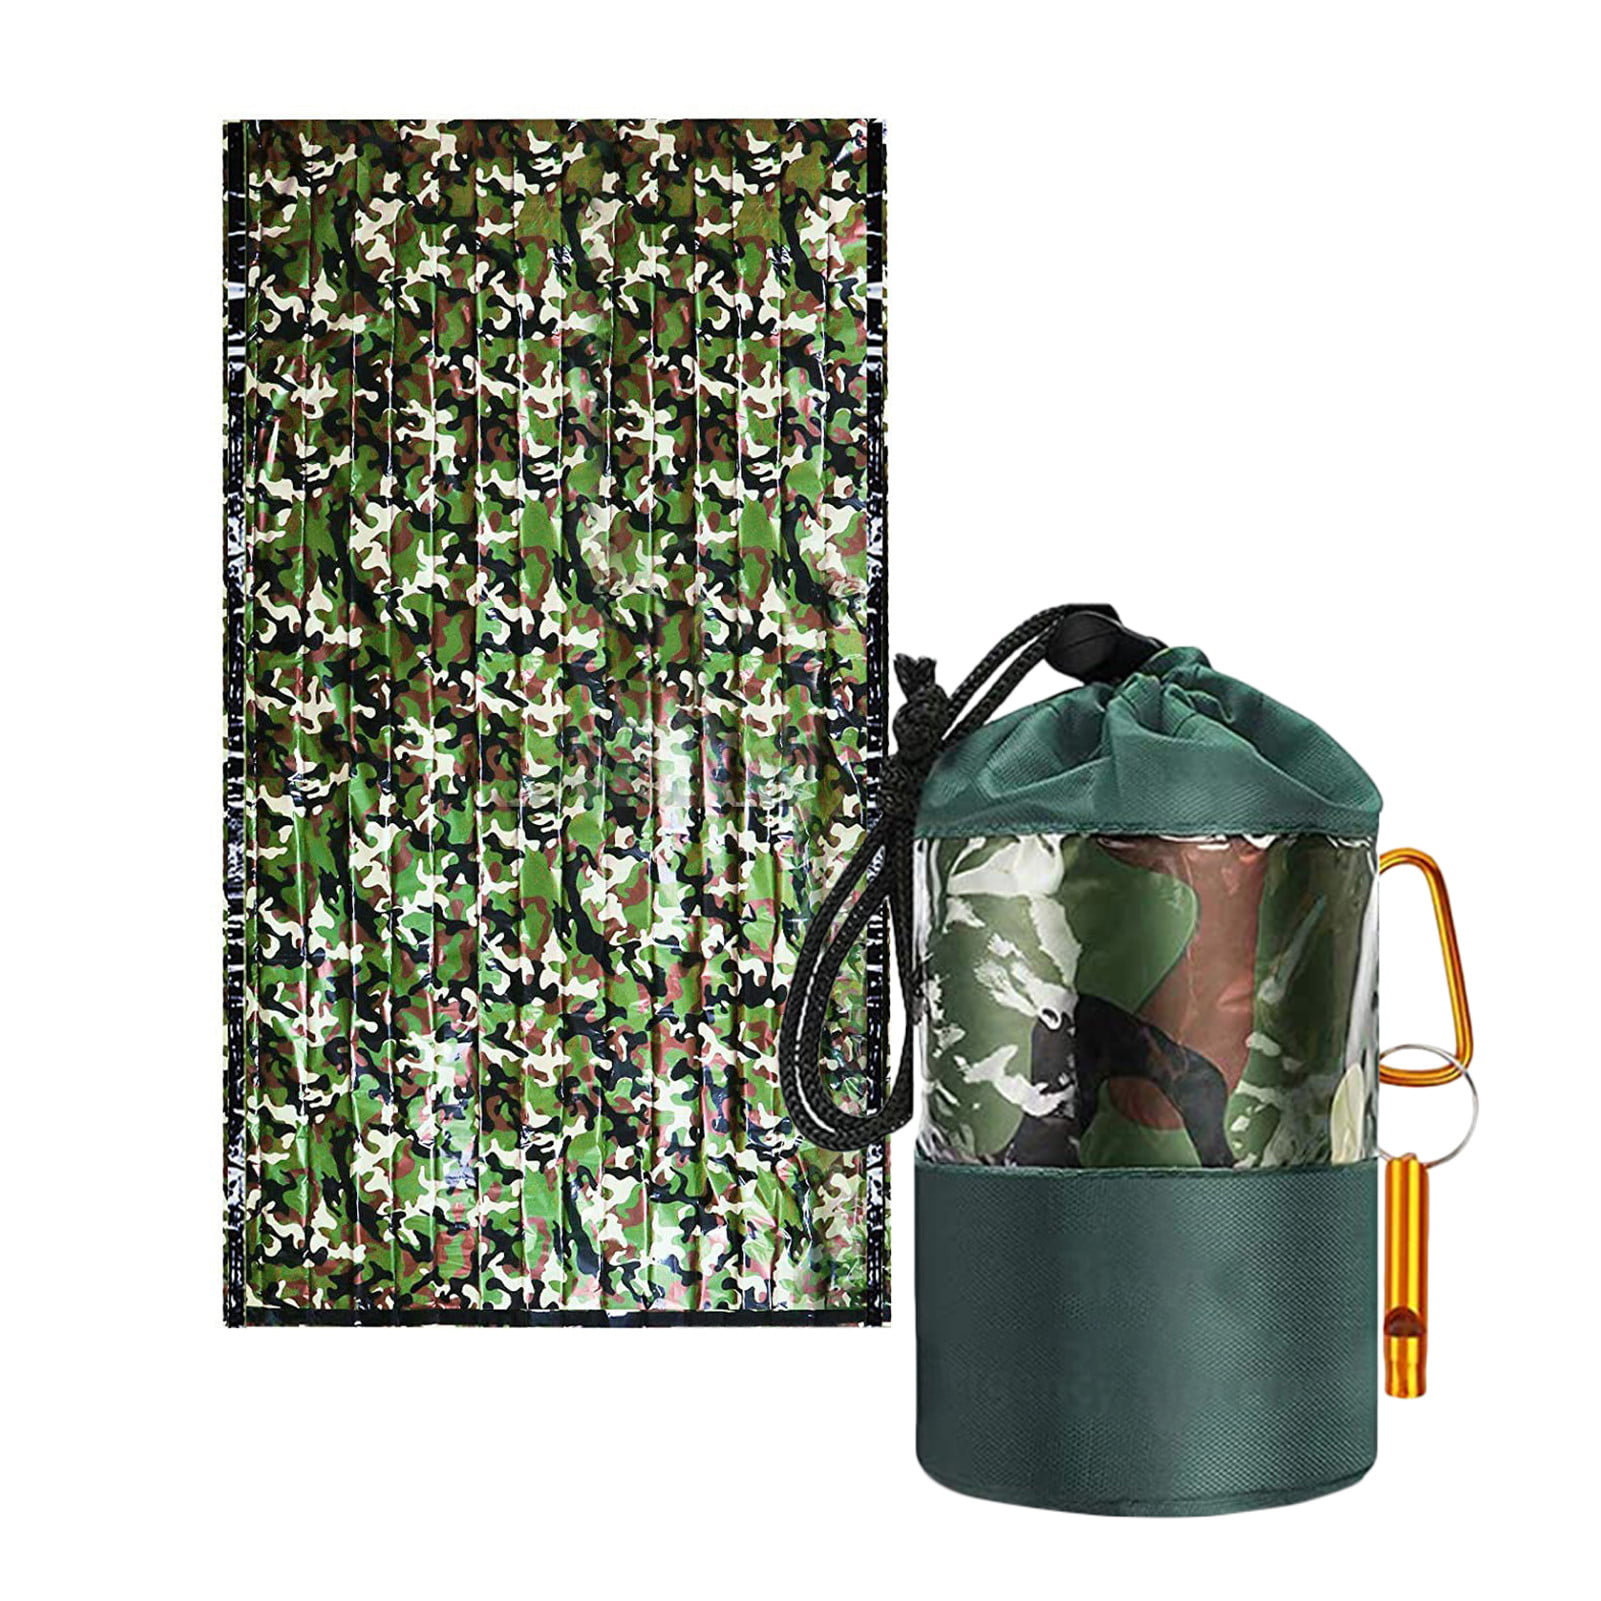 Camouflage Waterproof Reusable Emergency Sleeping Bag Thermal Survival Camping 